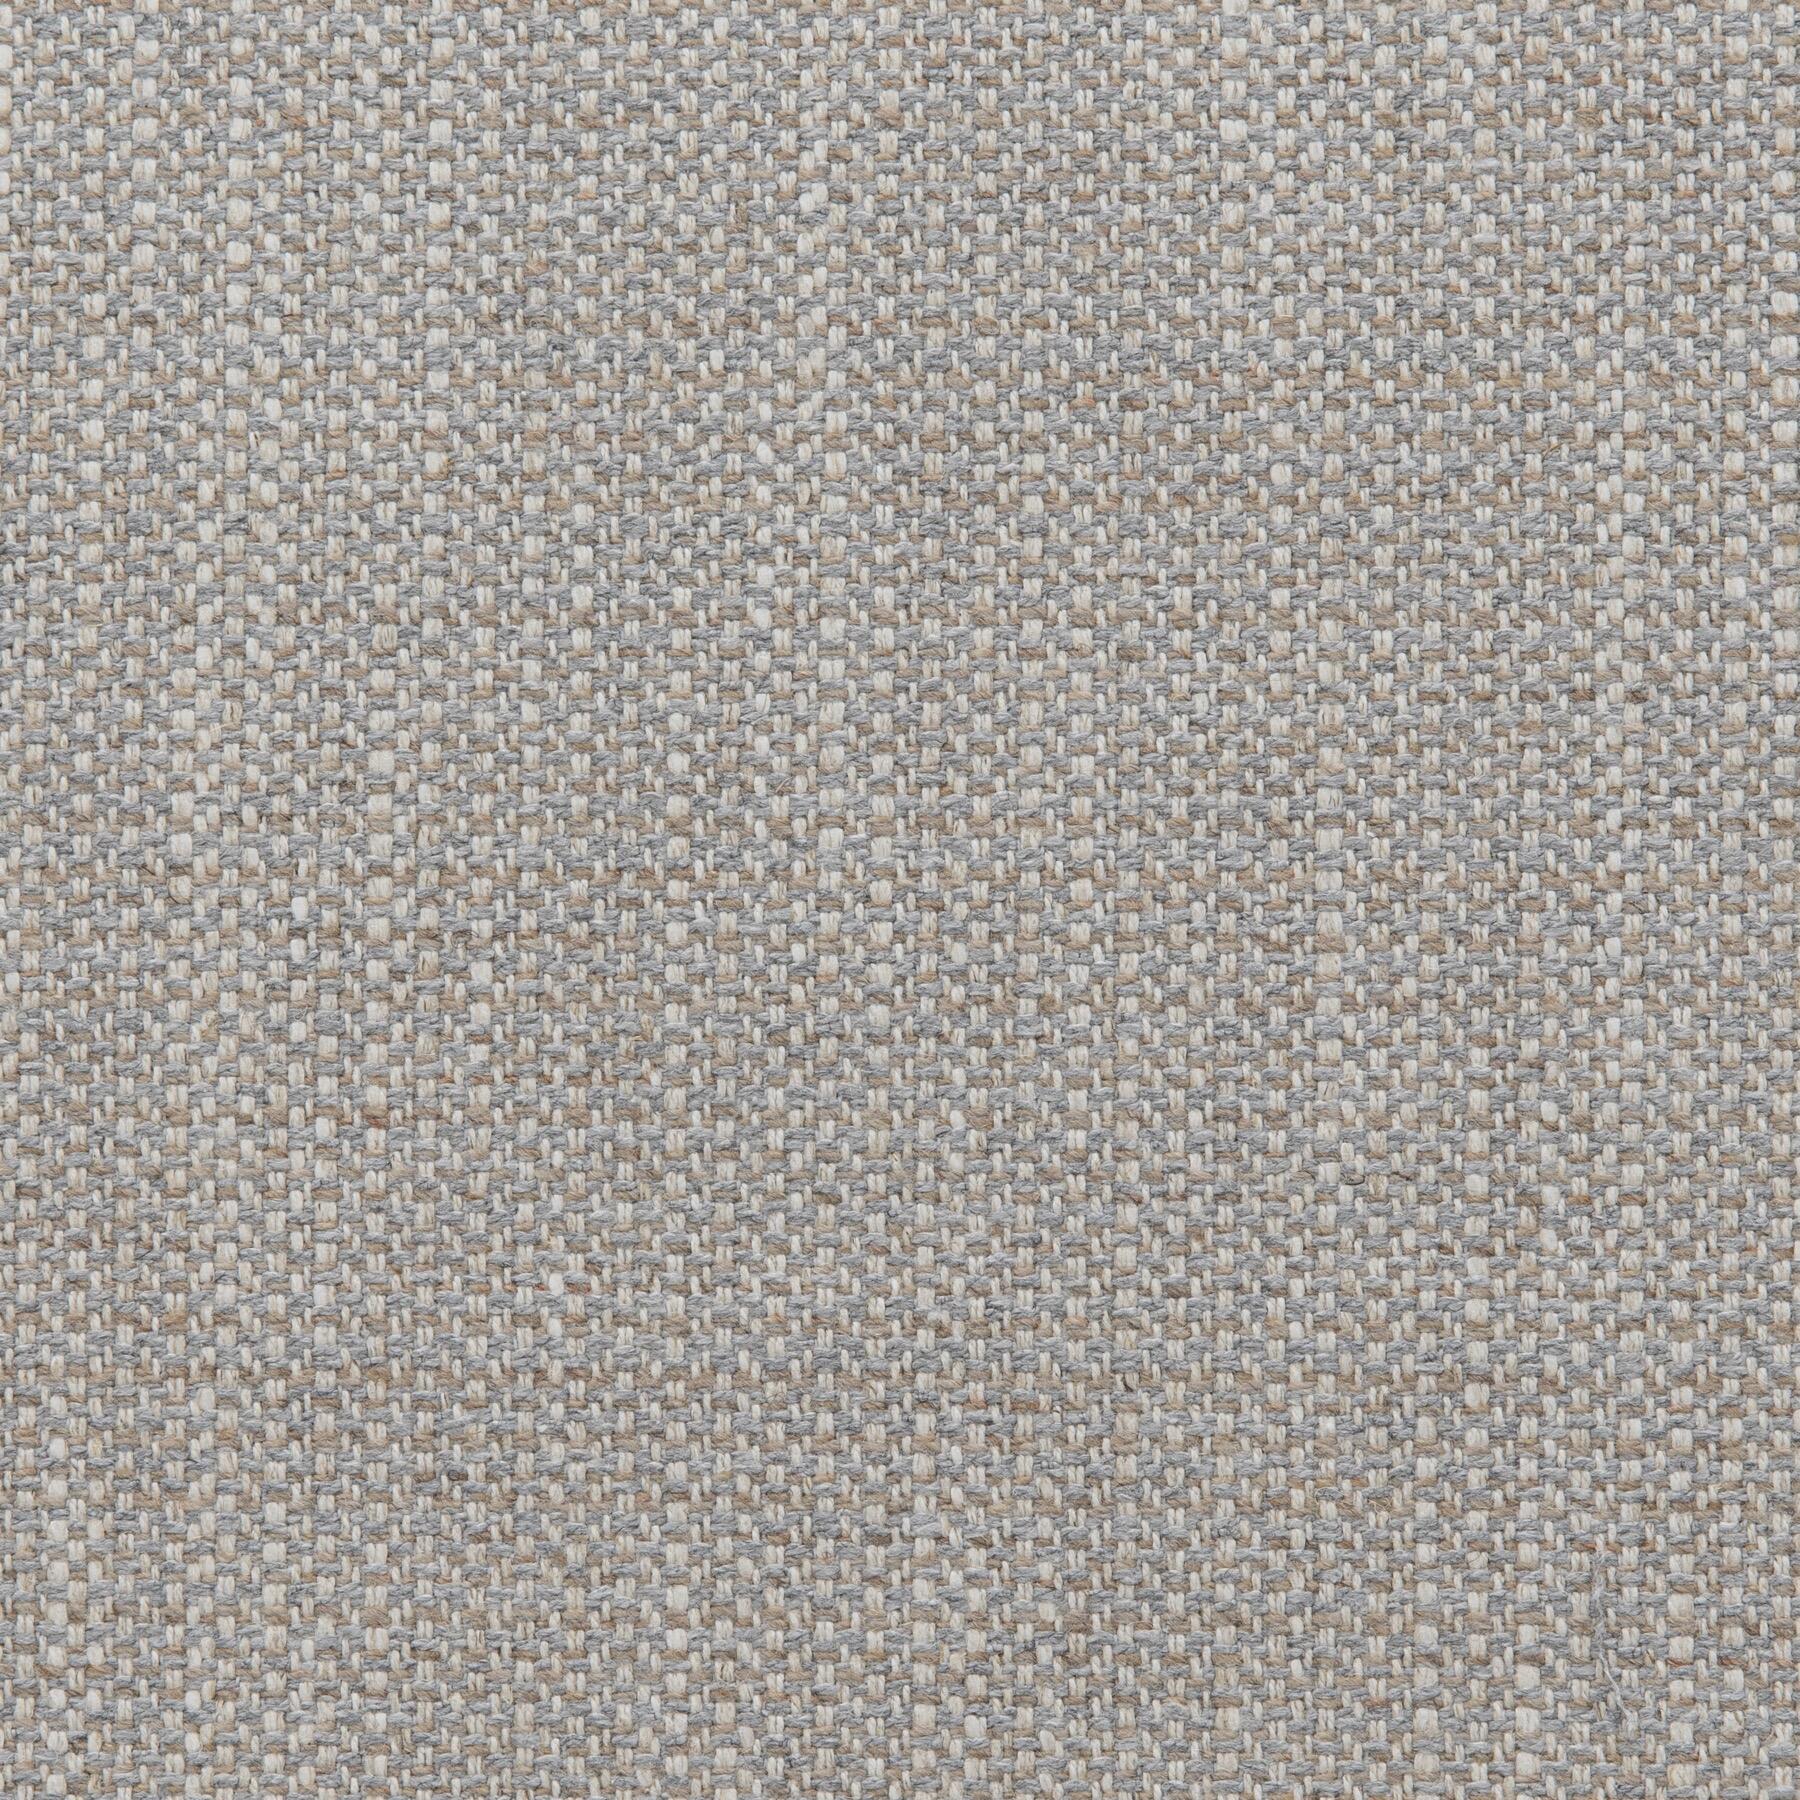 2025/03 Debonair: Warm Grey